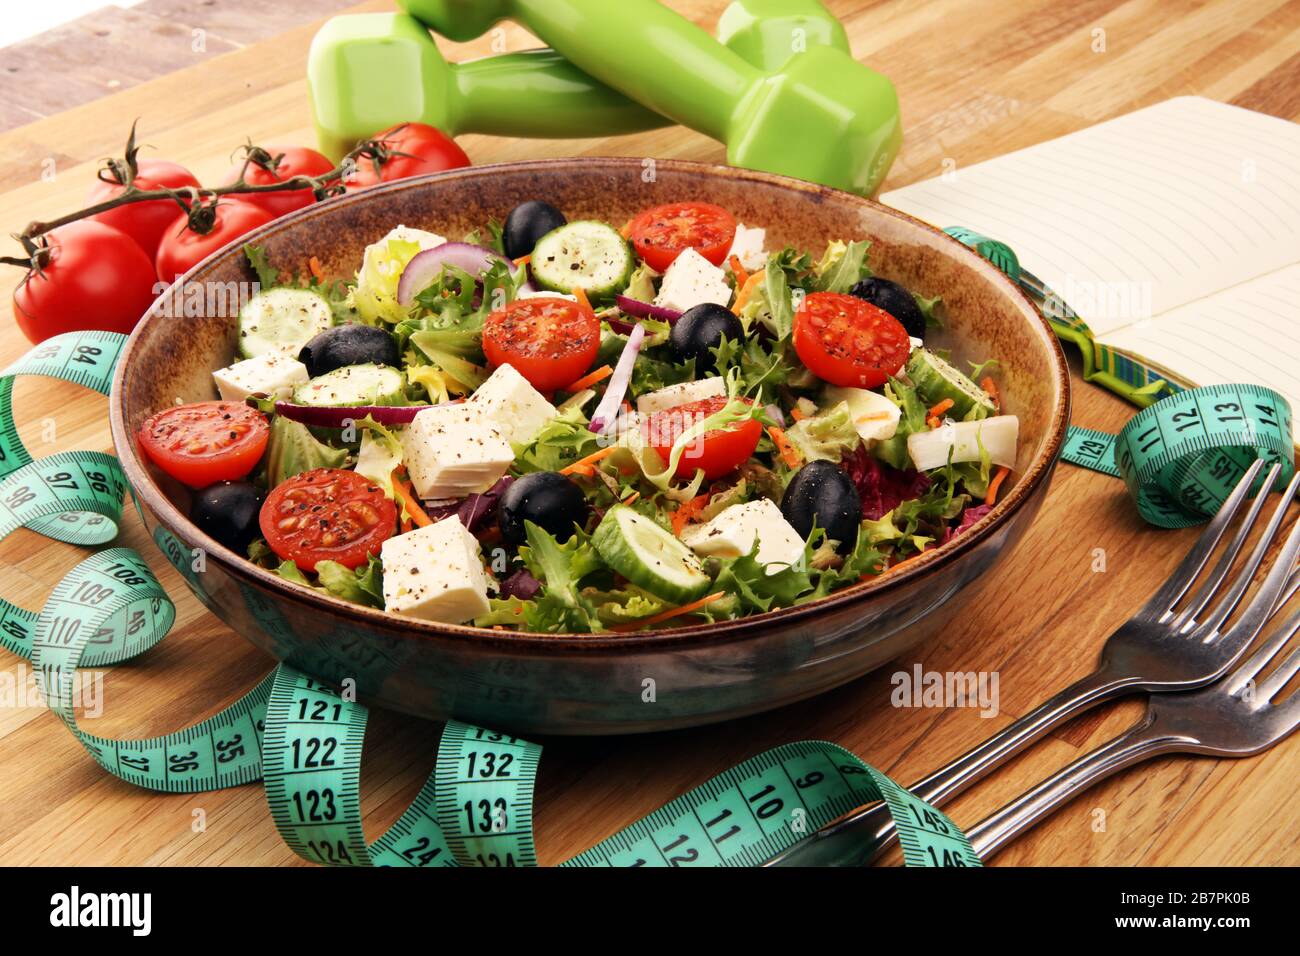 Authentischer frischer Salat in einem Steinbecher mit Hanteln Übungsausrüstung, Messband und Gabel auf dem Tisch. Gesunder Lebensstil, gutes Gesundheitskonzept. Stockfoto